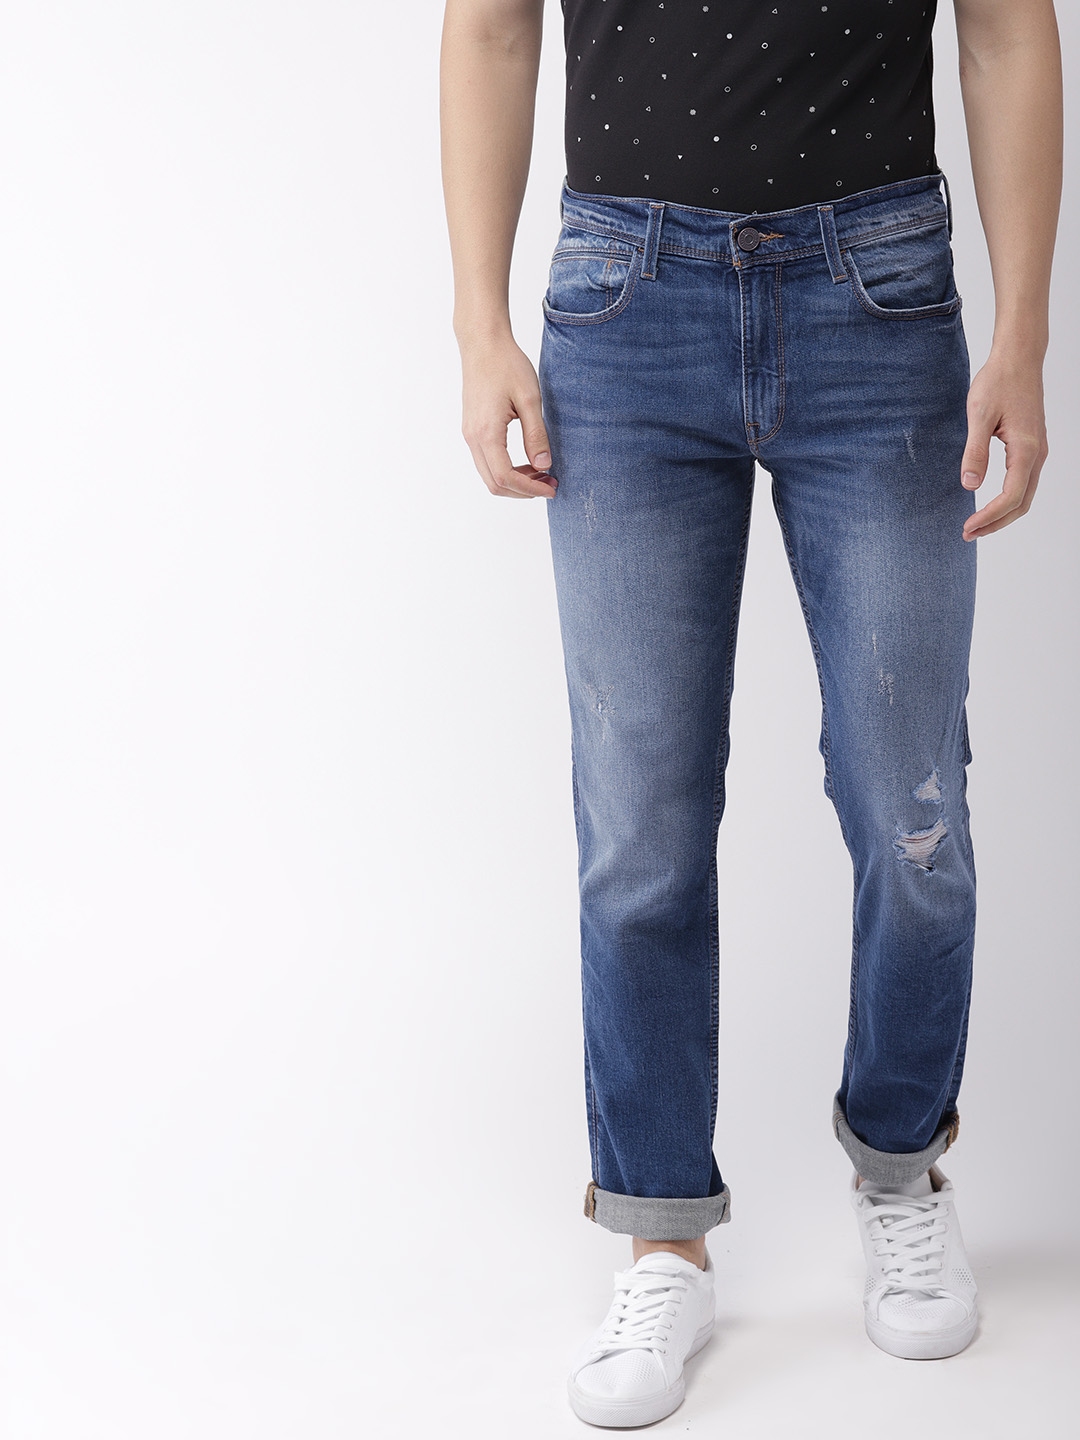 buy \u003e levis stretchable jeans online 